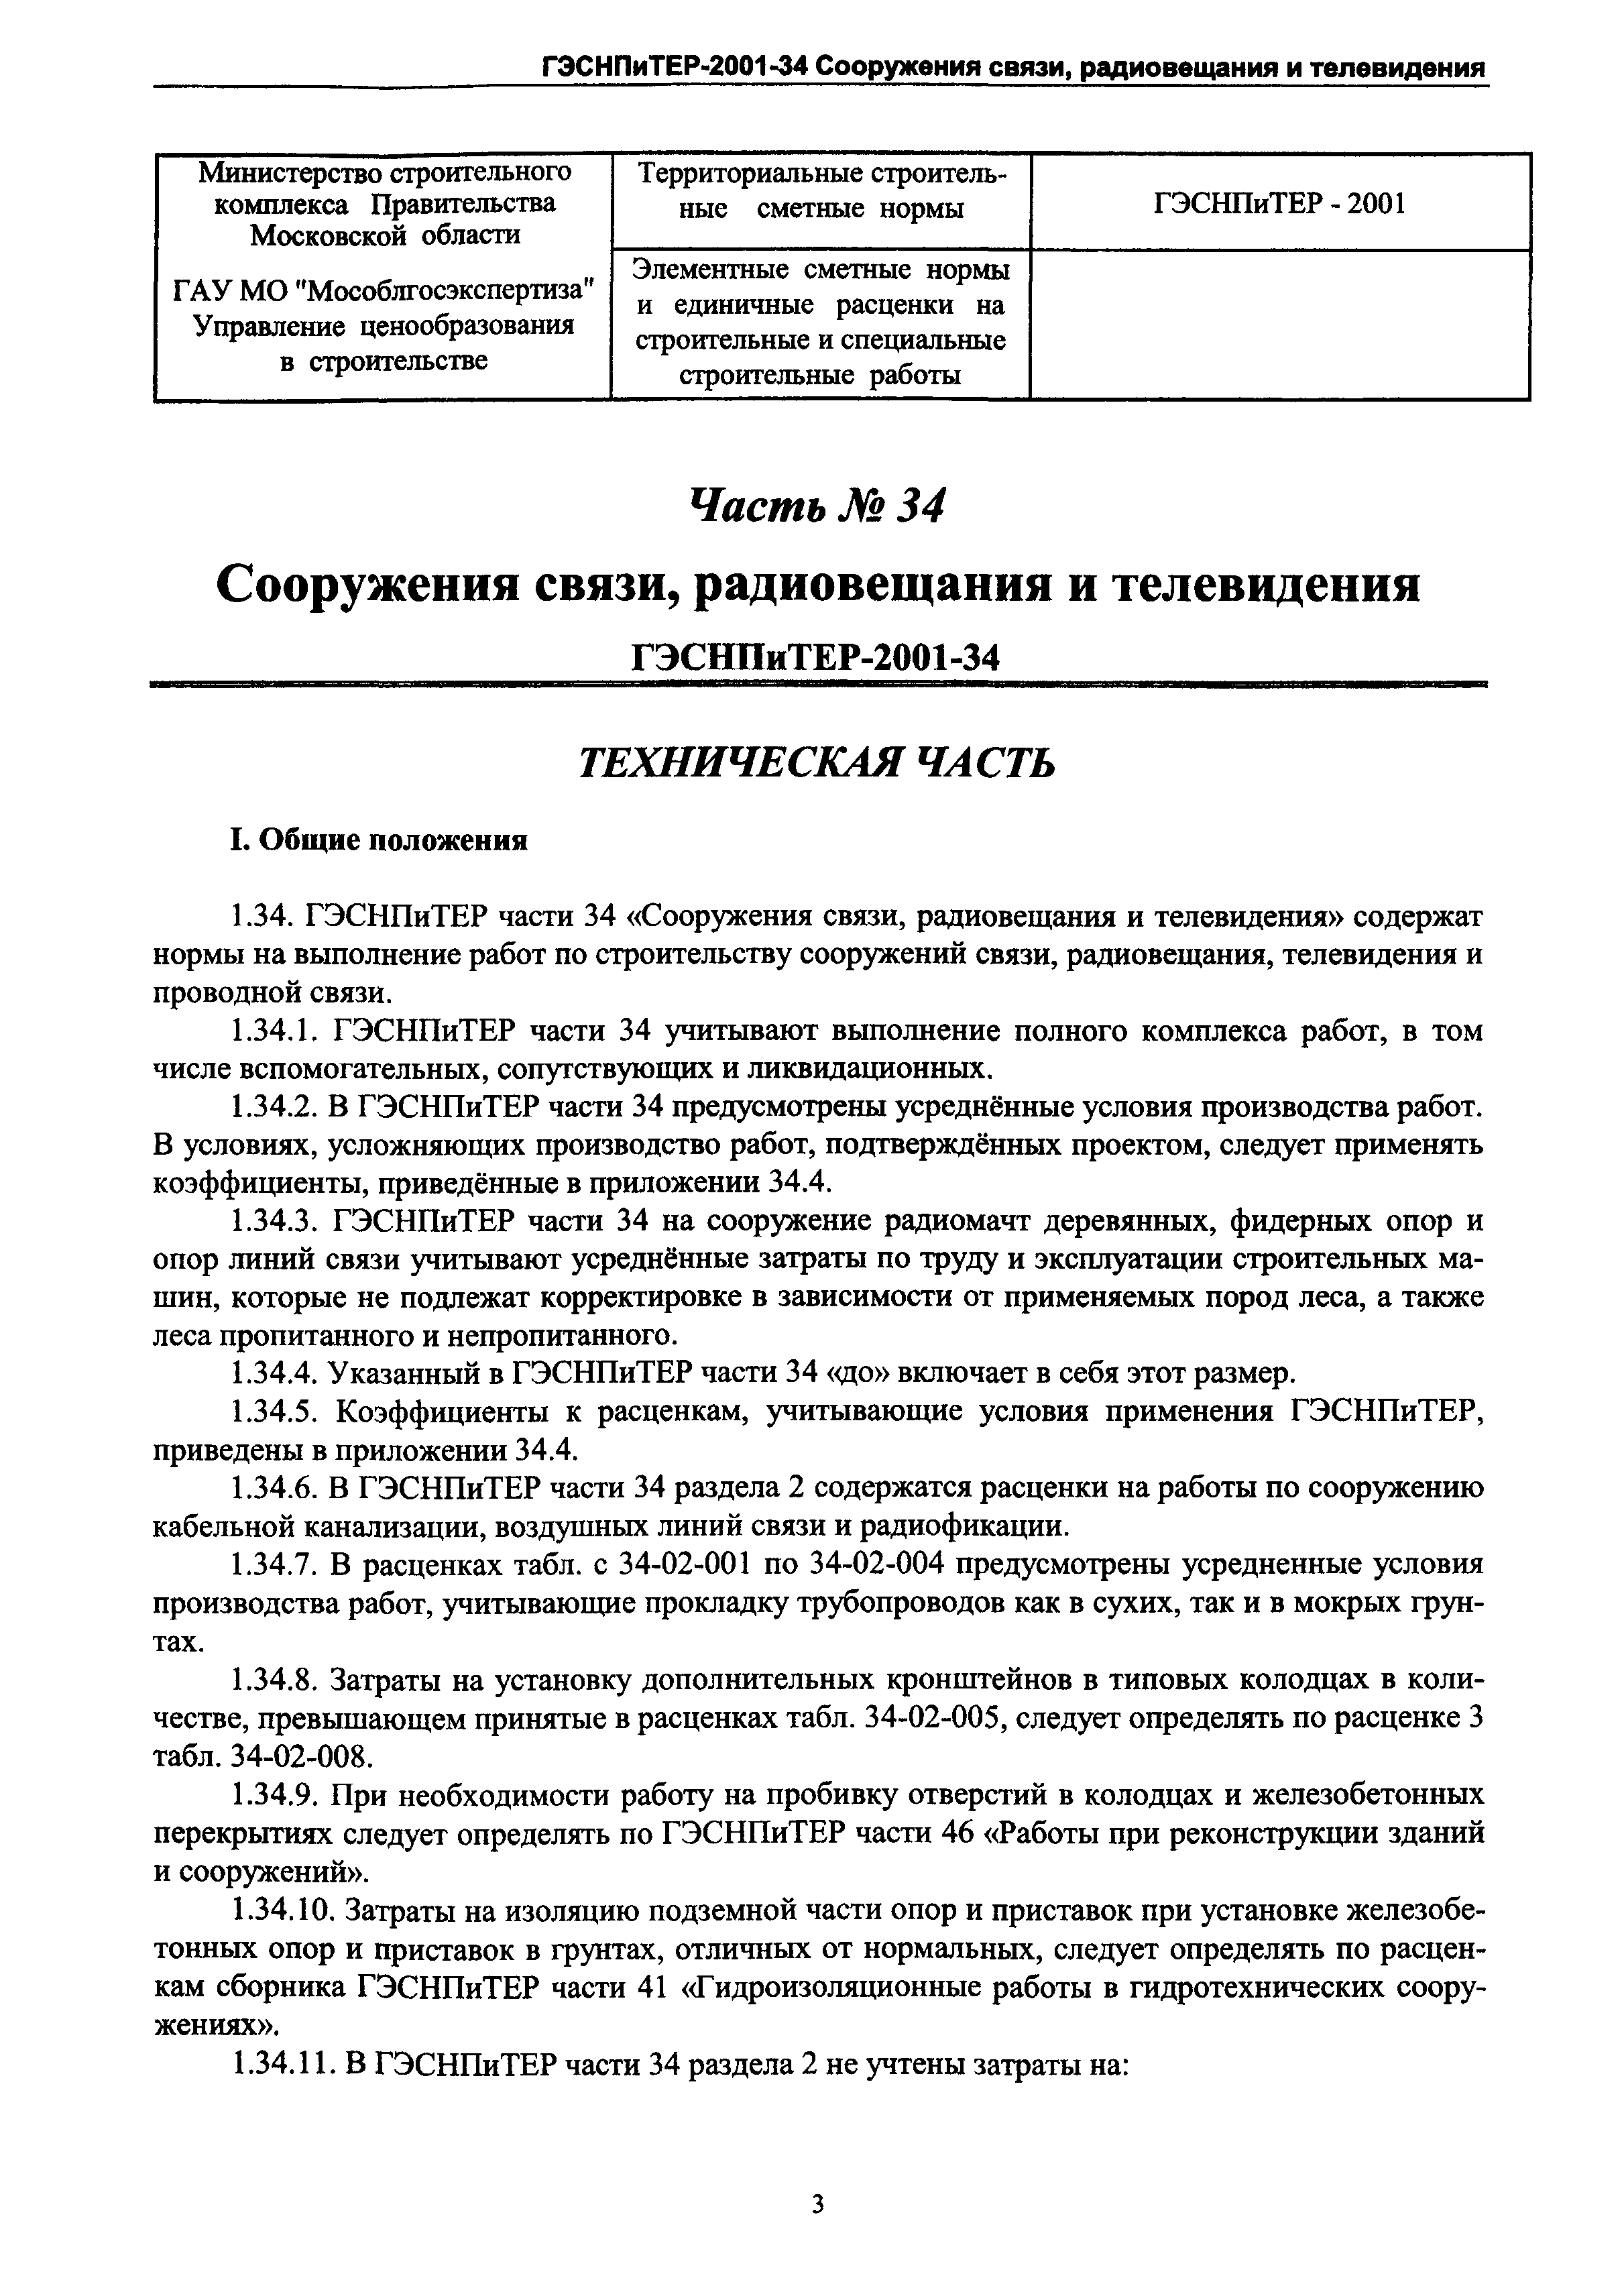 ГЭСНПиТЕР 2001-34 Московской области